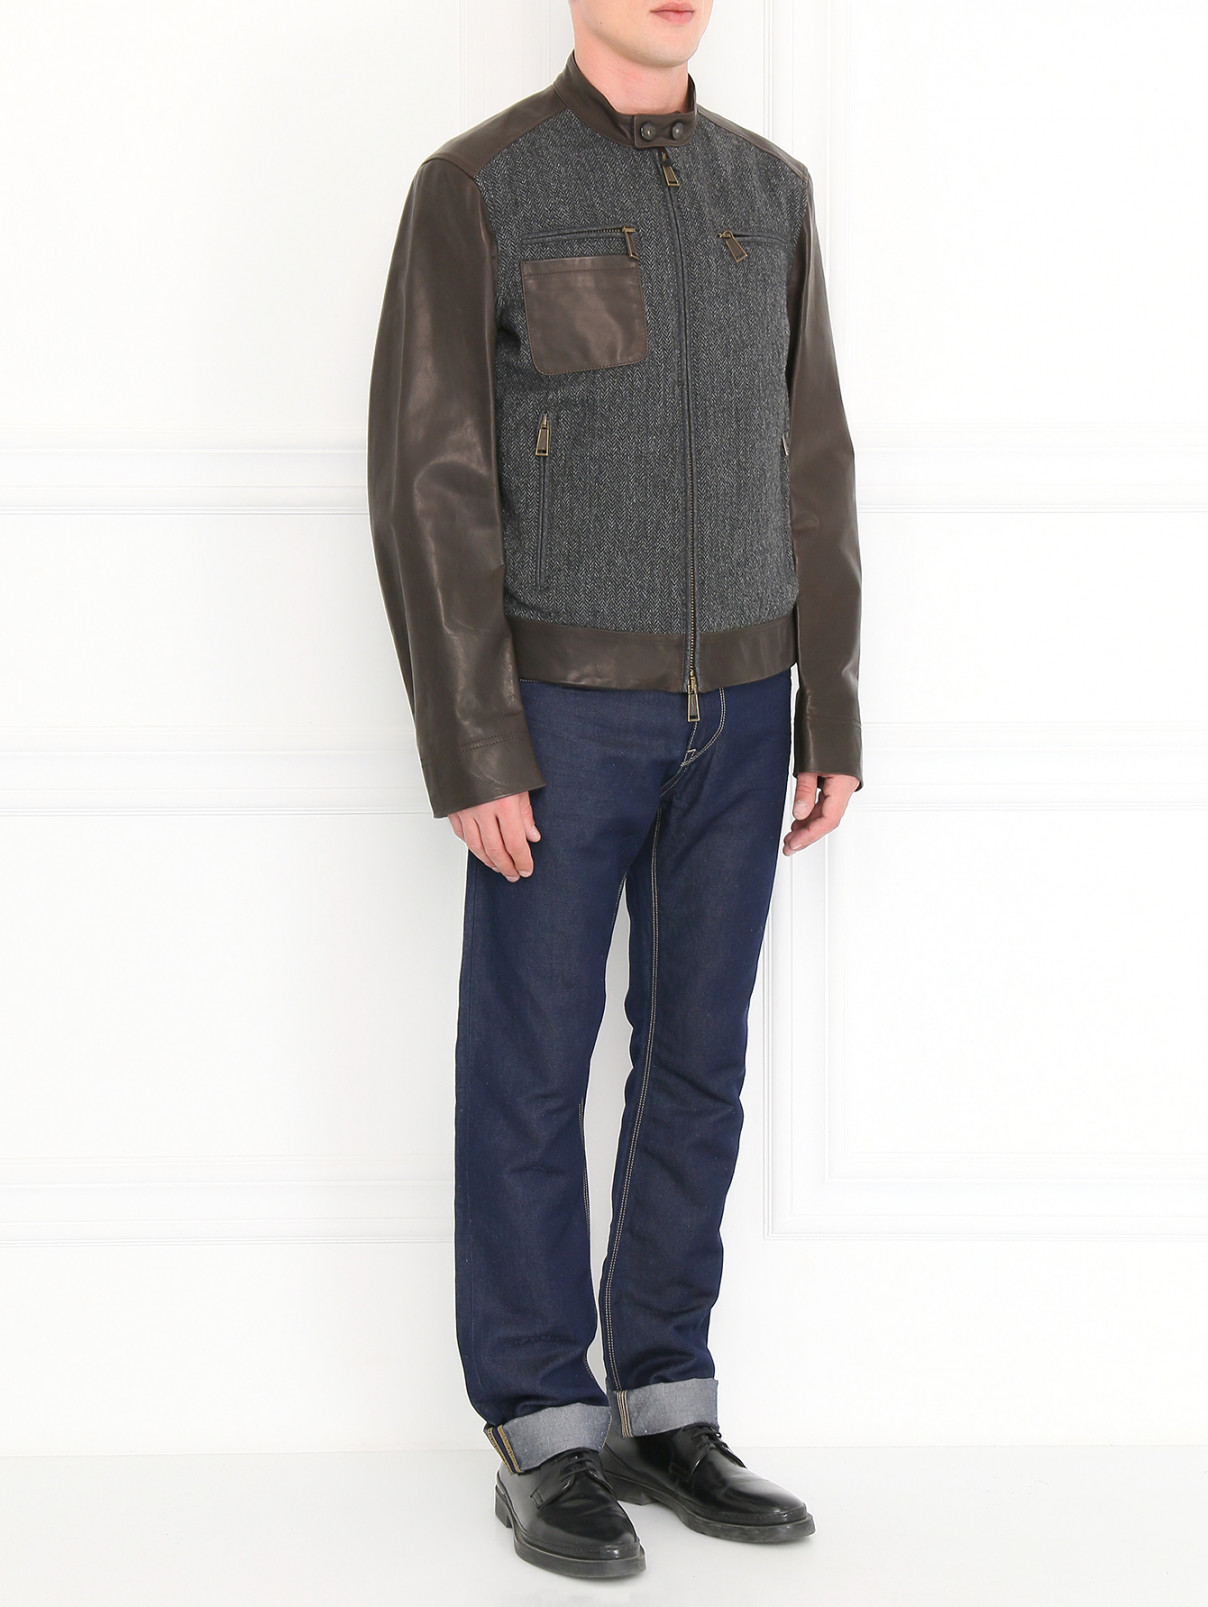 Куртка из шерсти с кожаными вставками Dsquared2  –  Модель Общий вид  – Цвет:  Серый